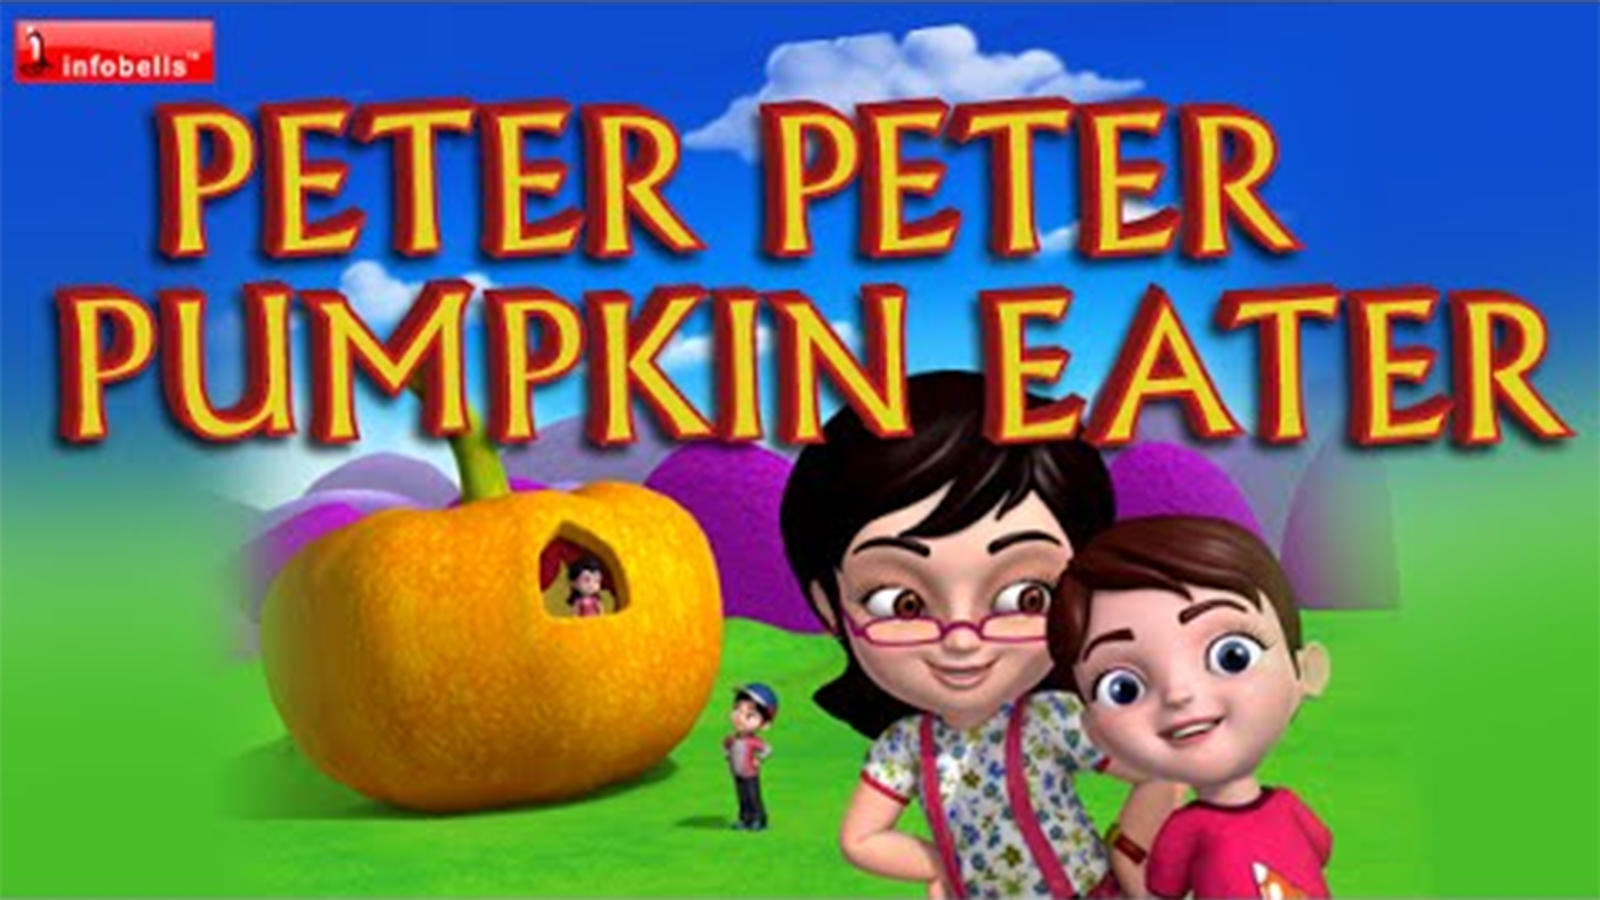 Nursery Rhymes in English Children Songs: Children Video Song in English  'Peter Peter Pumpkin Eater'